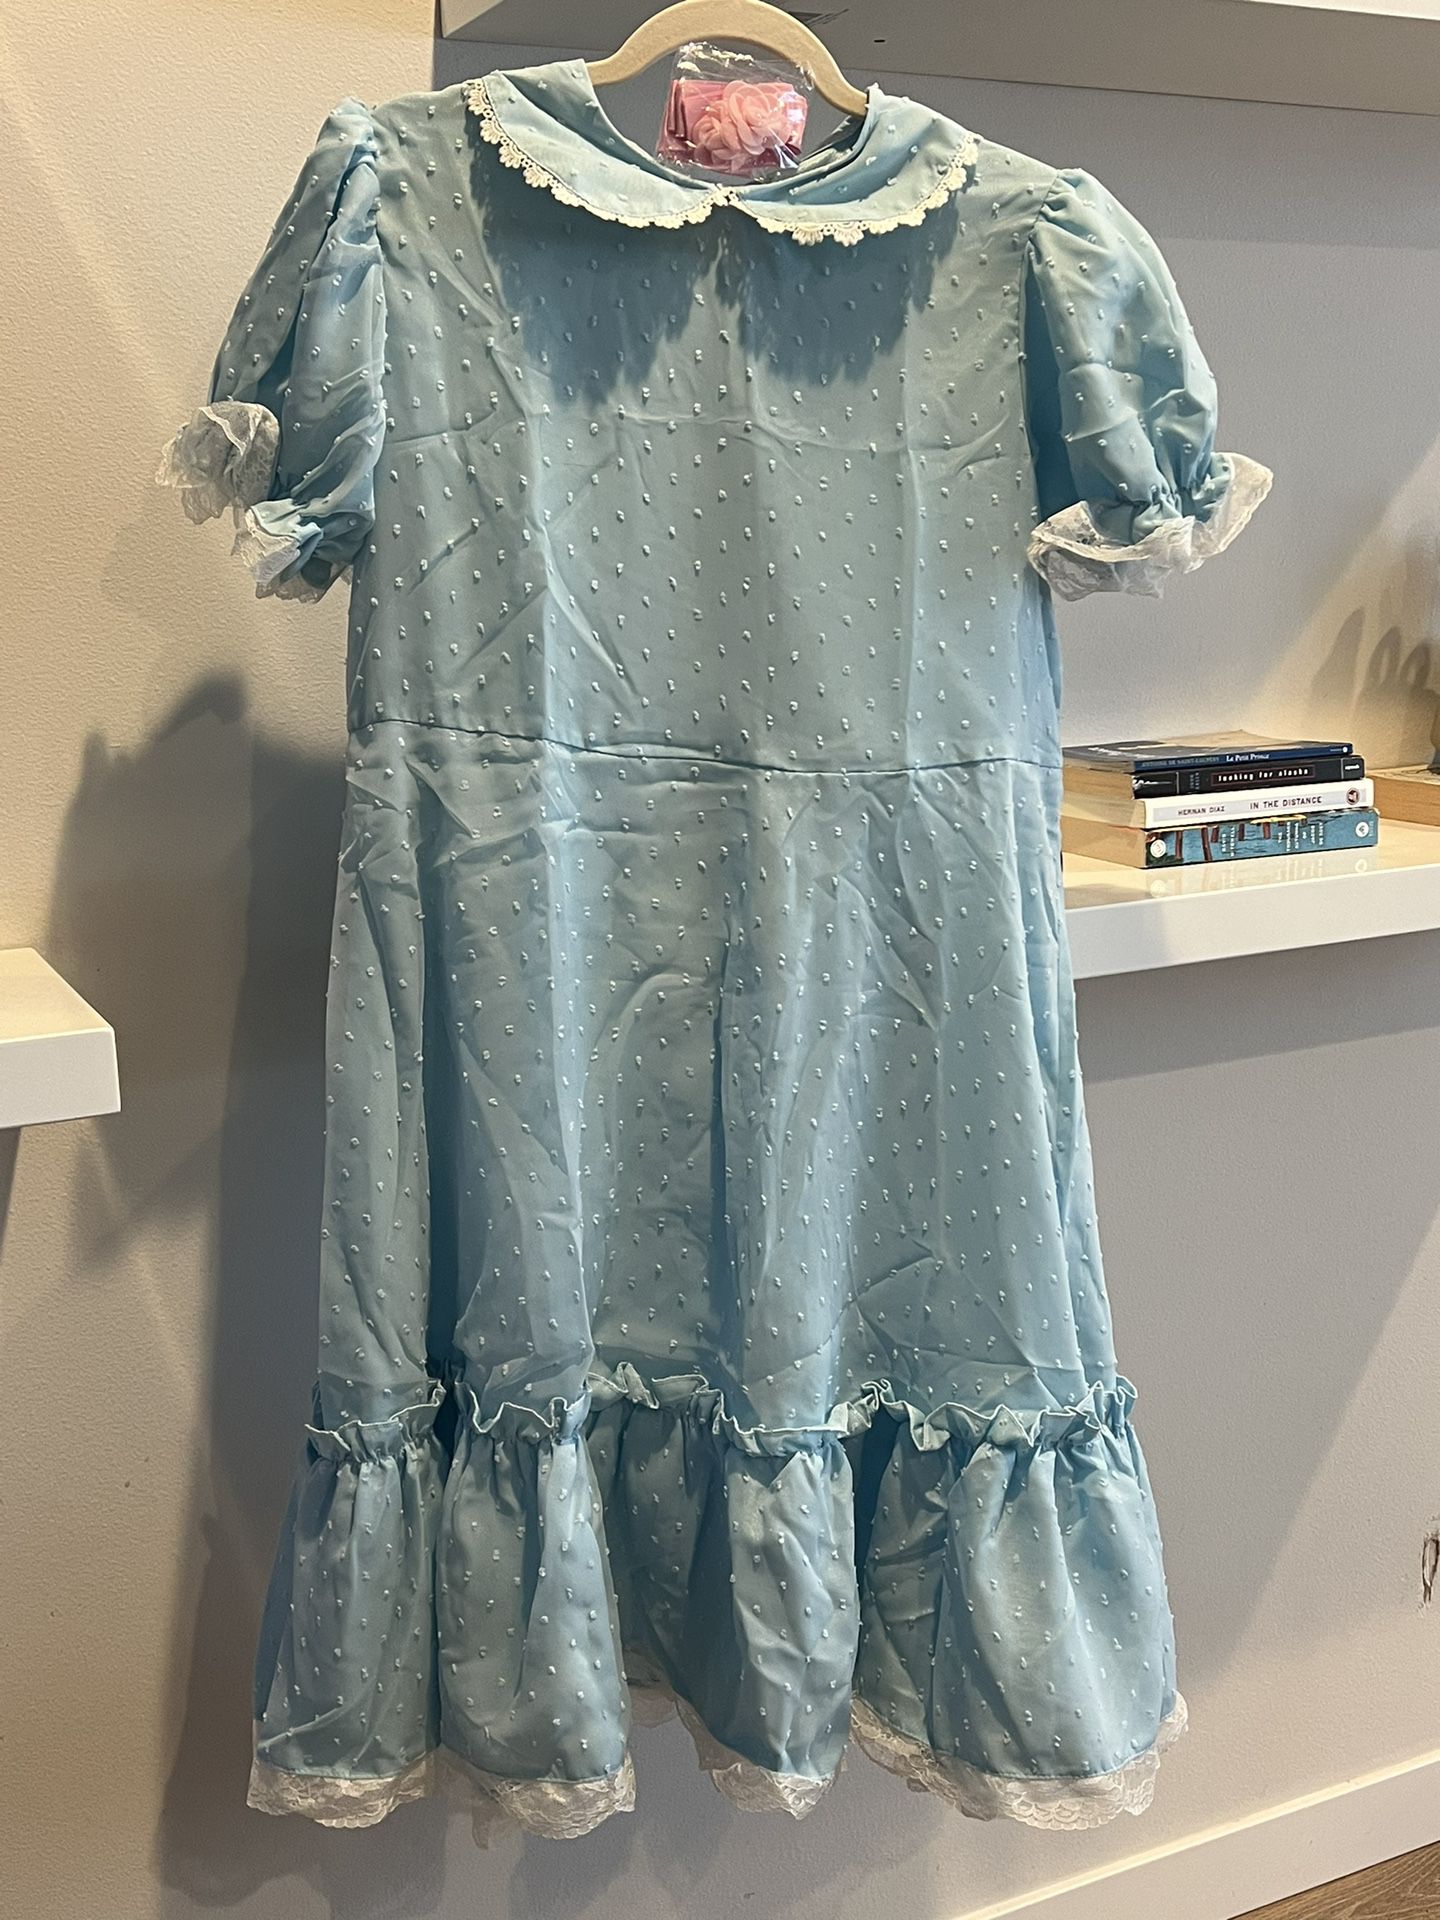 Women's Blue Chiffon Dress 